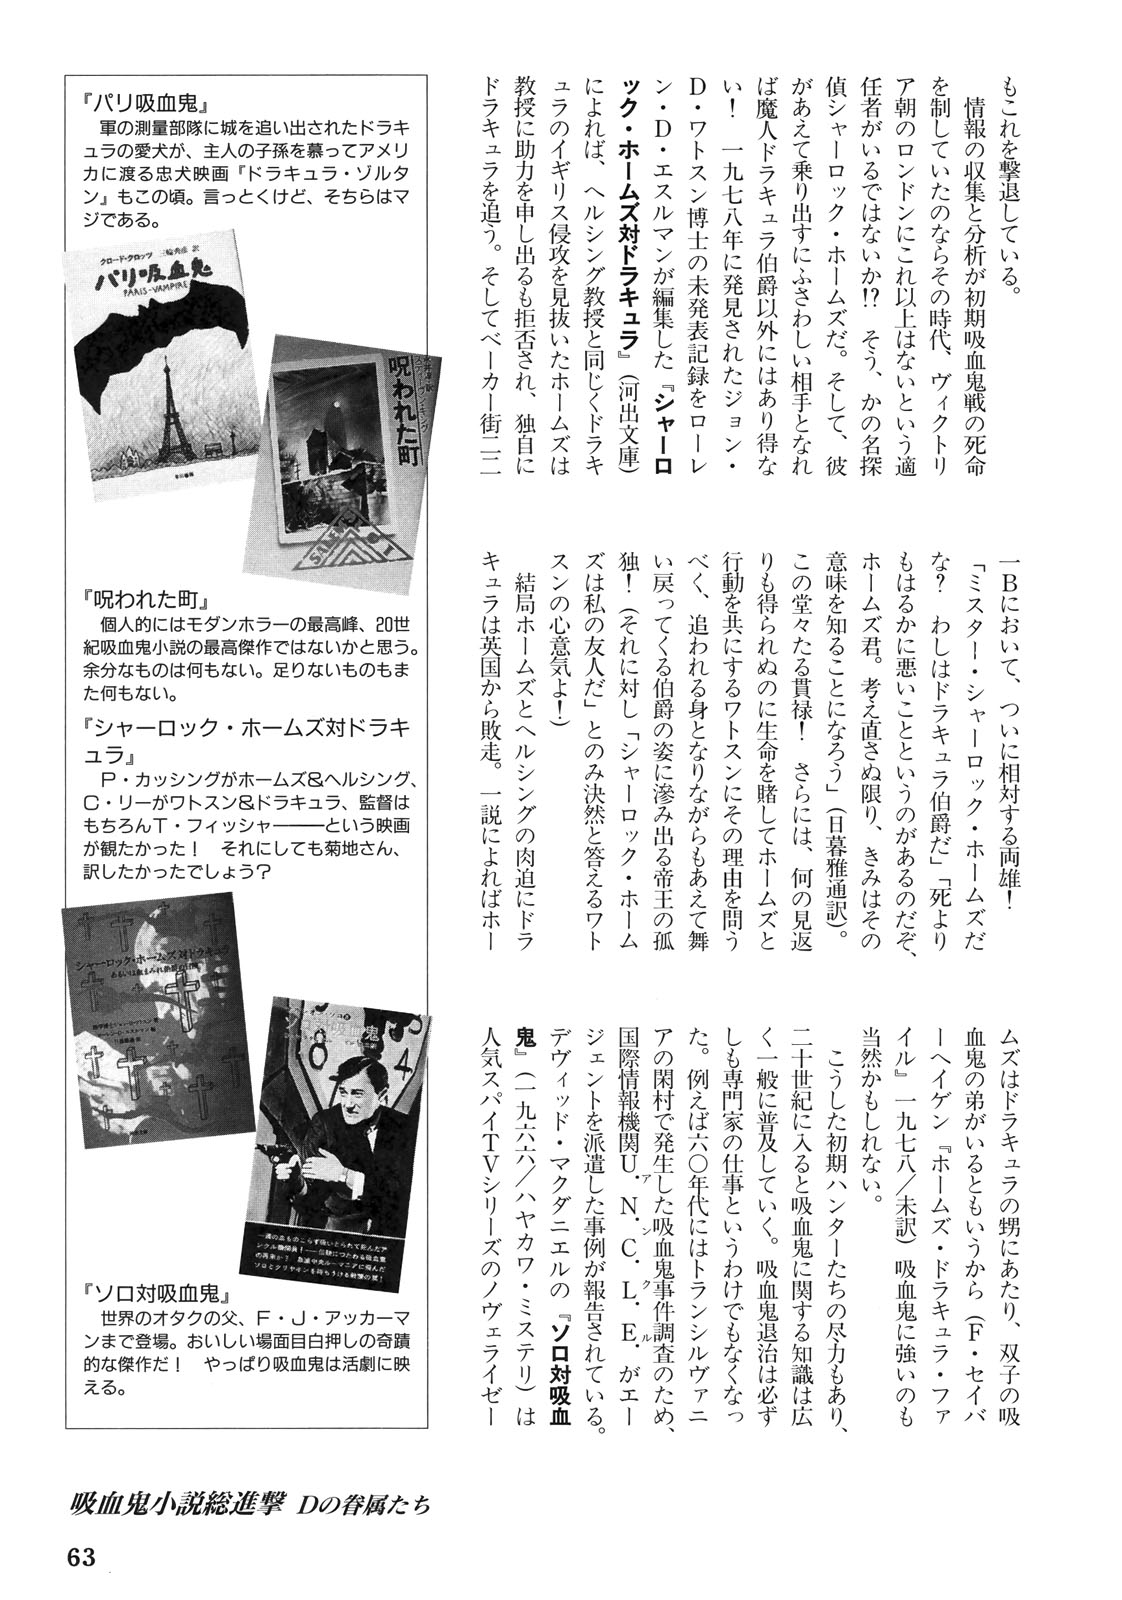 Vampire Hunter D Reader’s Guide 64